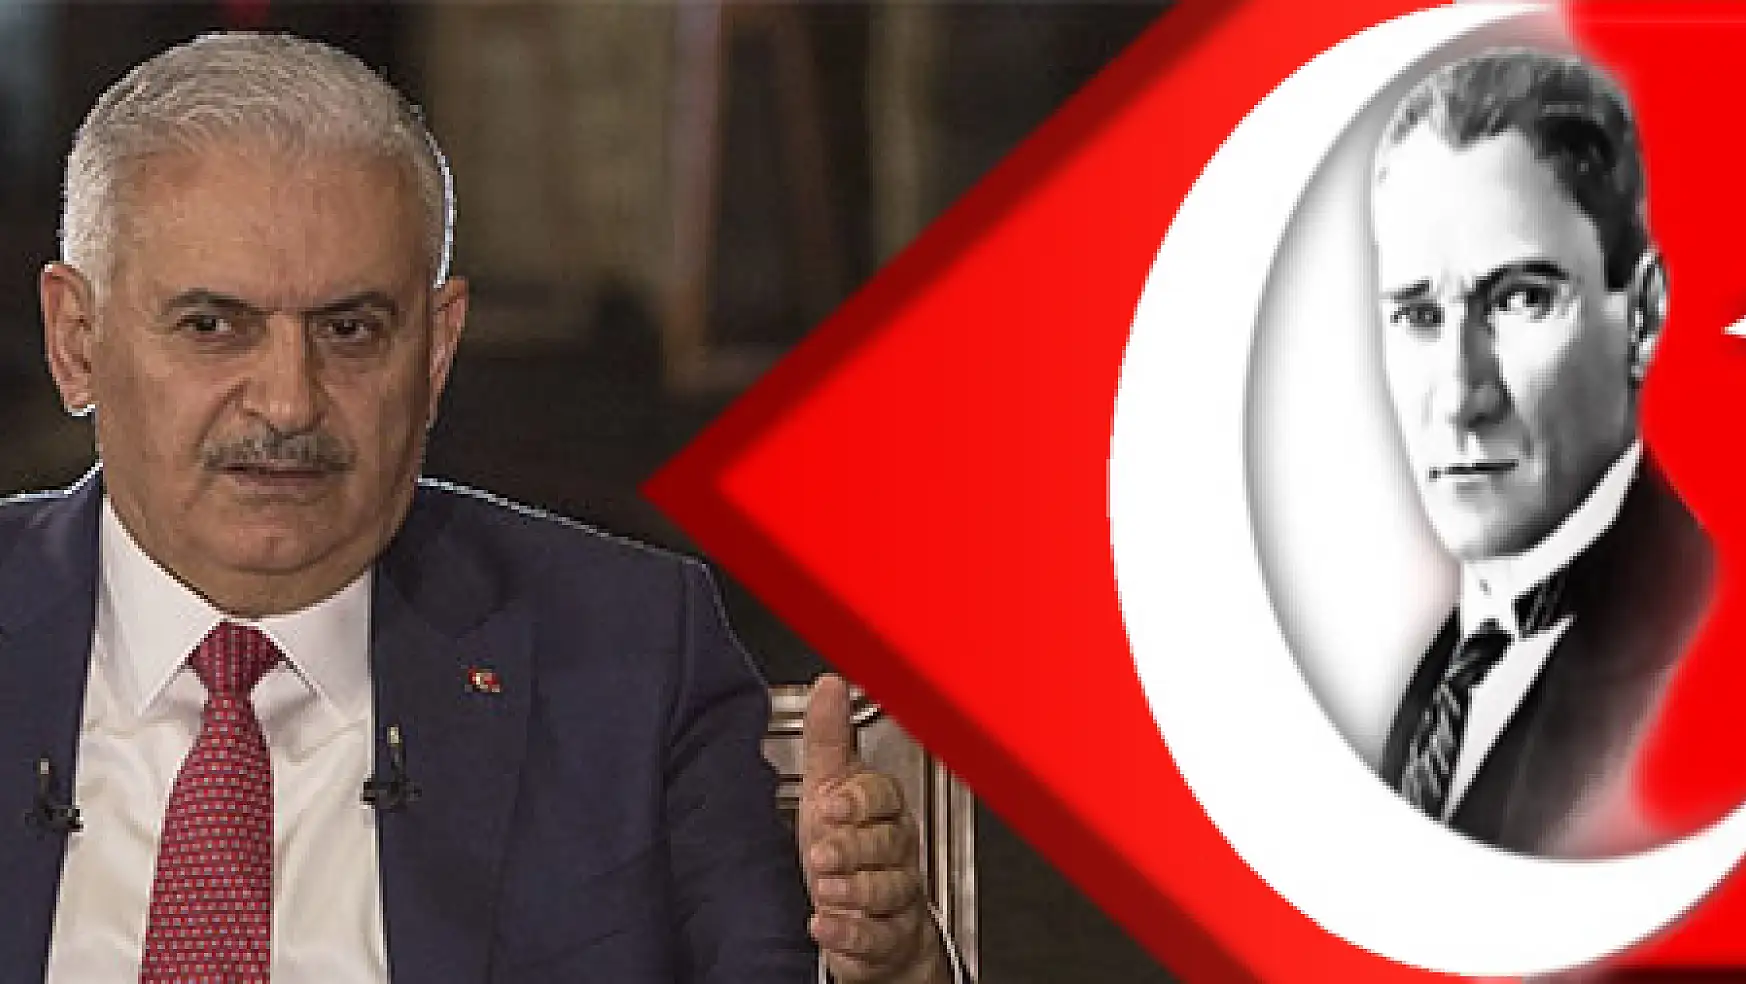 Başbakan Binali Yıldırım: Abdullah Gül aday olacaksa olur, olmazsa olmaz